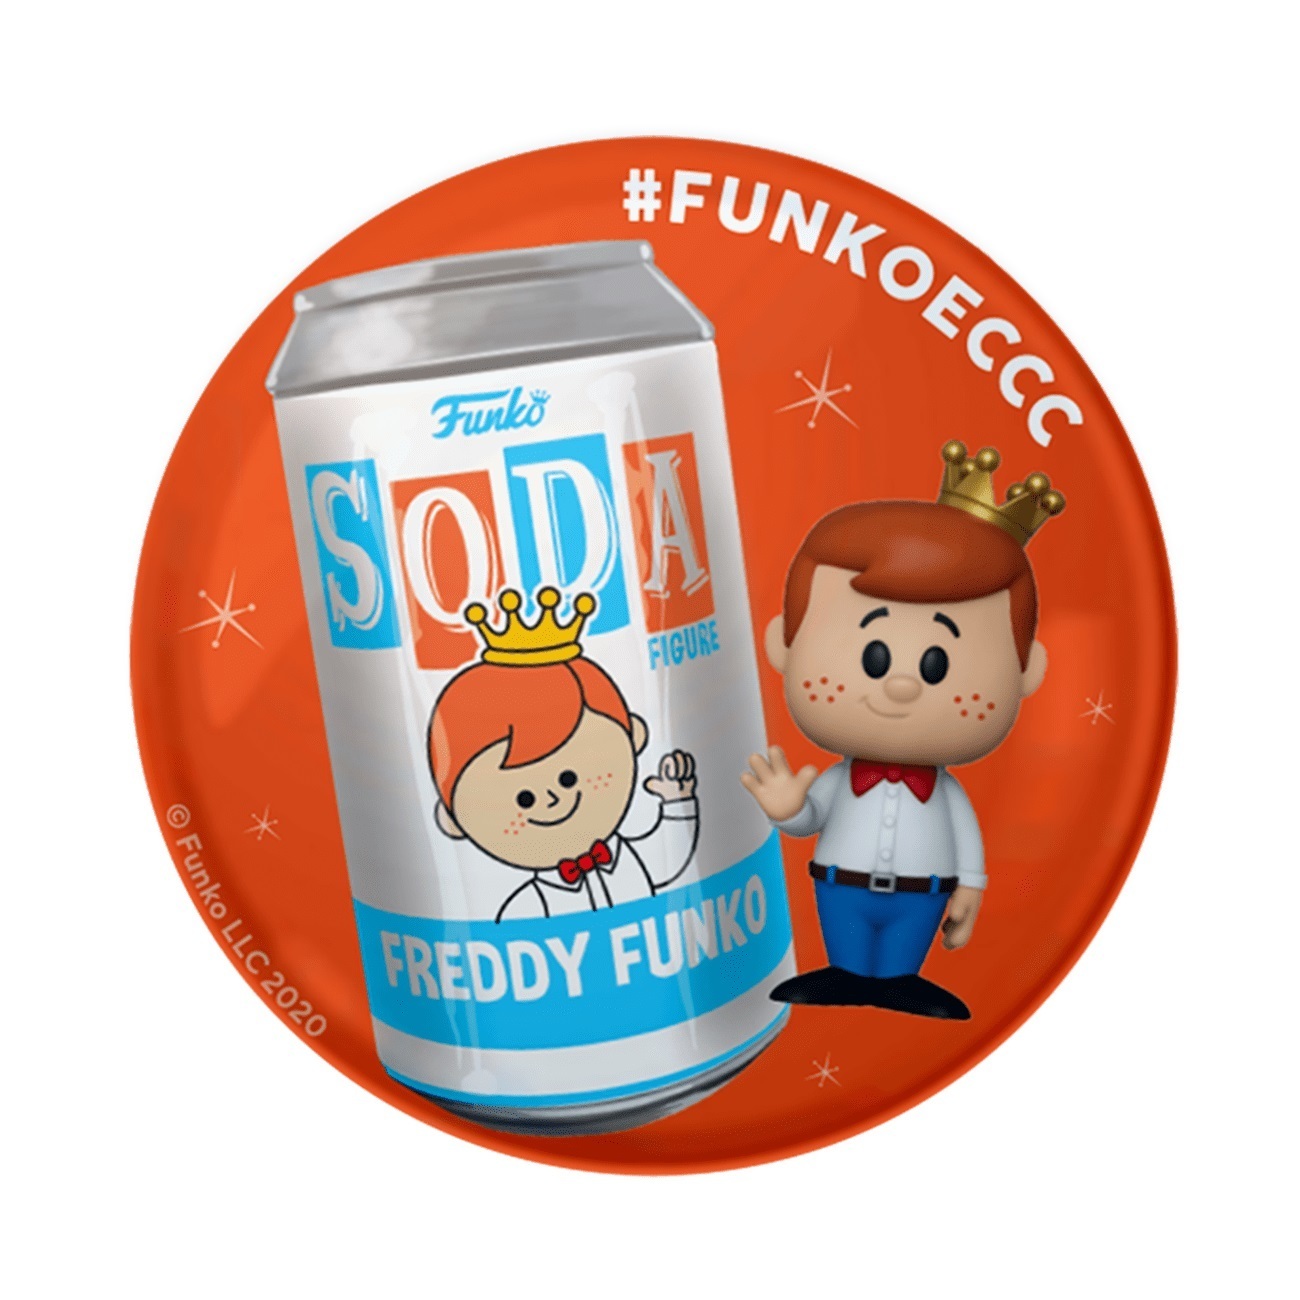 Funko Soda Freddy Funko | Pins and Badges | hobbyDB